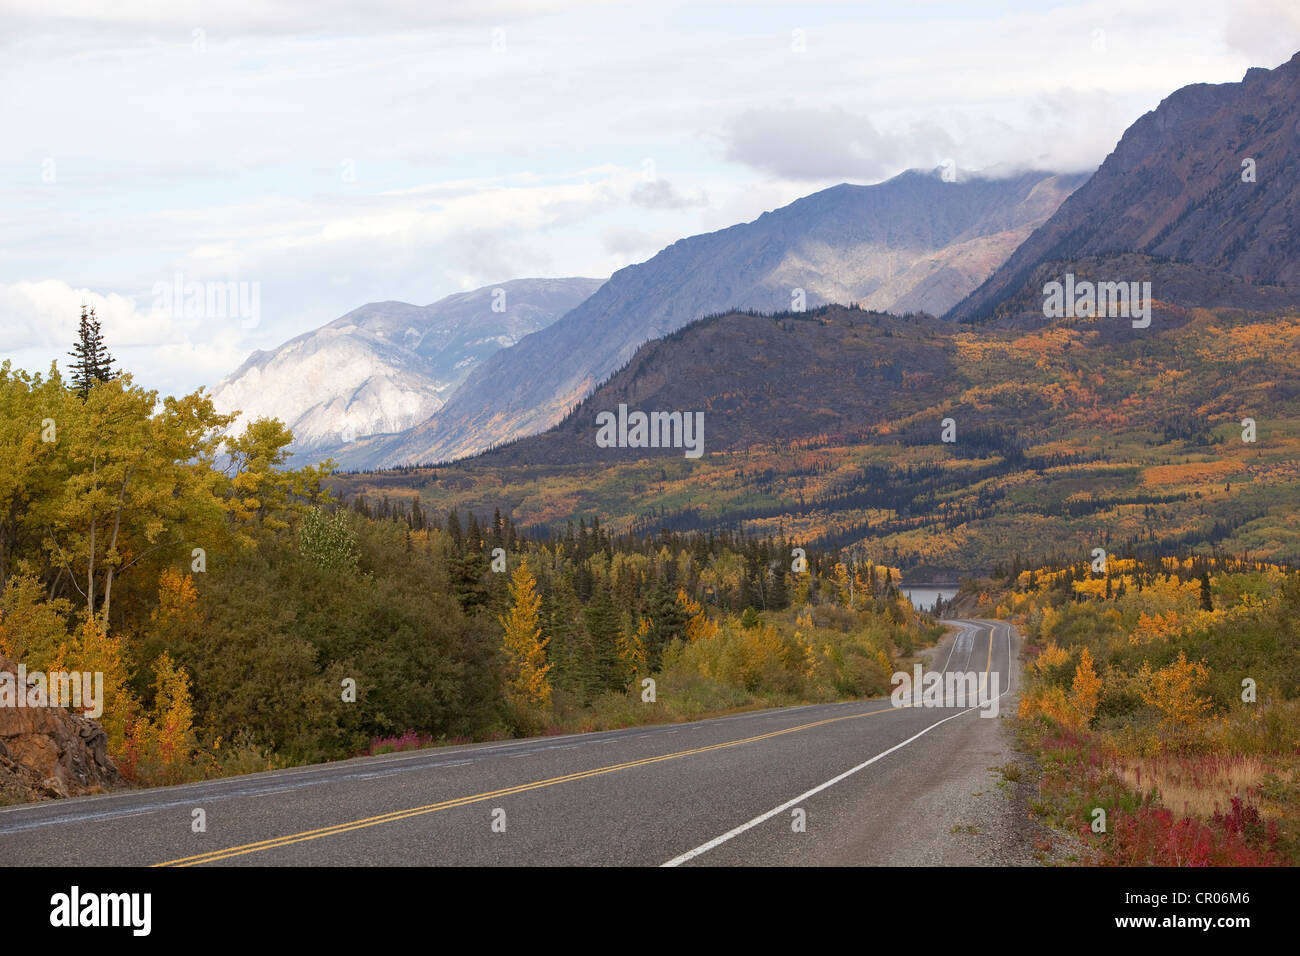 Route du Klondike sud, l'été indien, les feuilles en couleurs d'automne, automne, col blanc, derrière le lac Tagish (Territoire du Yukon, Canada Banque D'Images